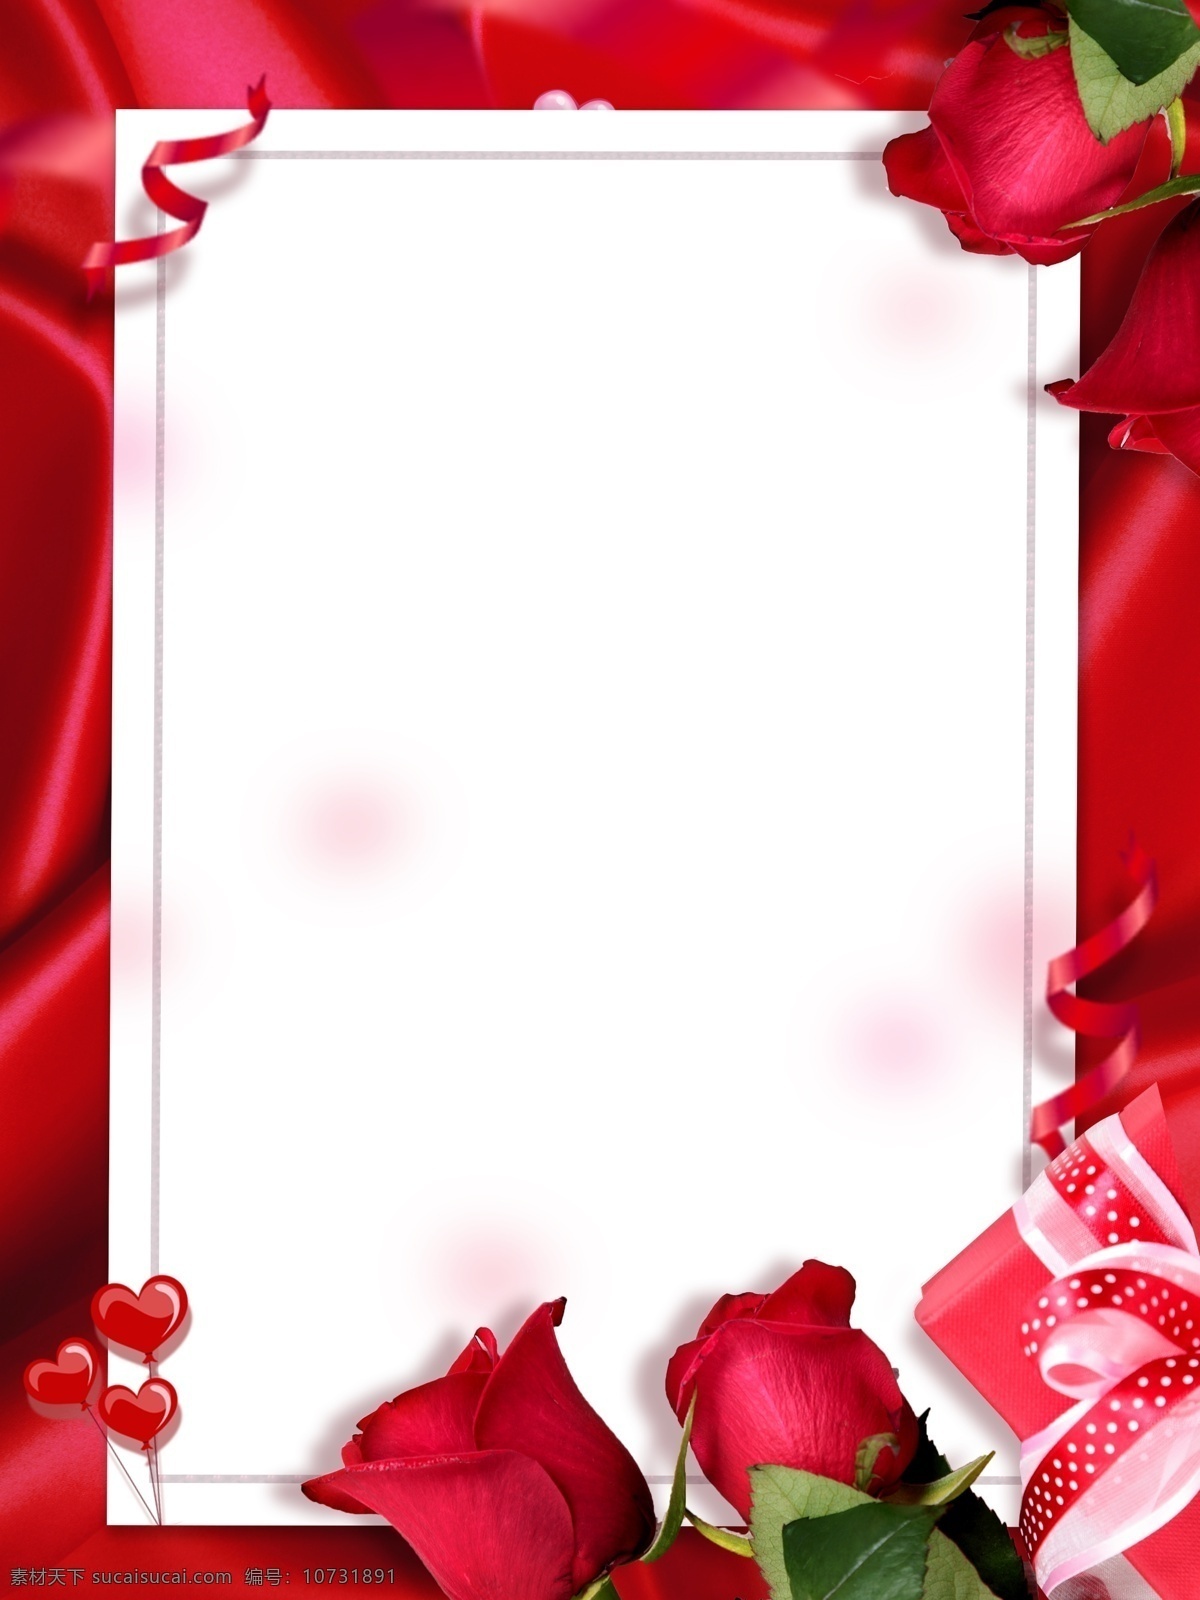 38 妇女节 女王 节 鲜花 主题 质感 纹理 红色 扁平 简约 背景 女神节 女王节